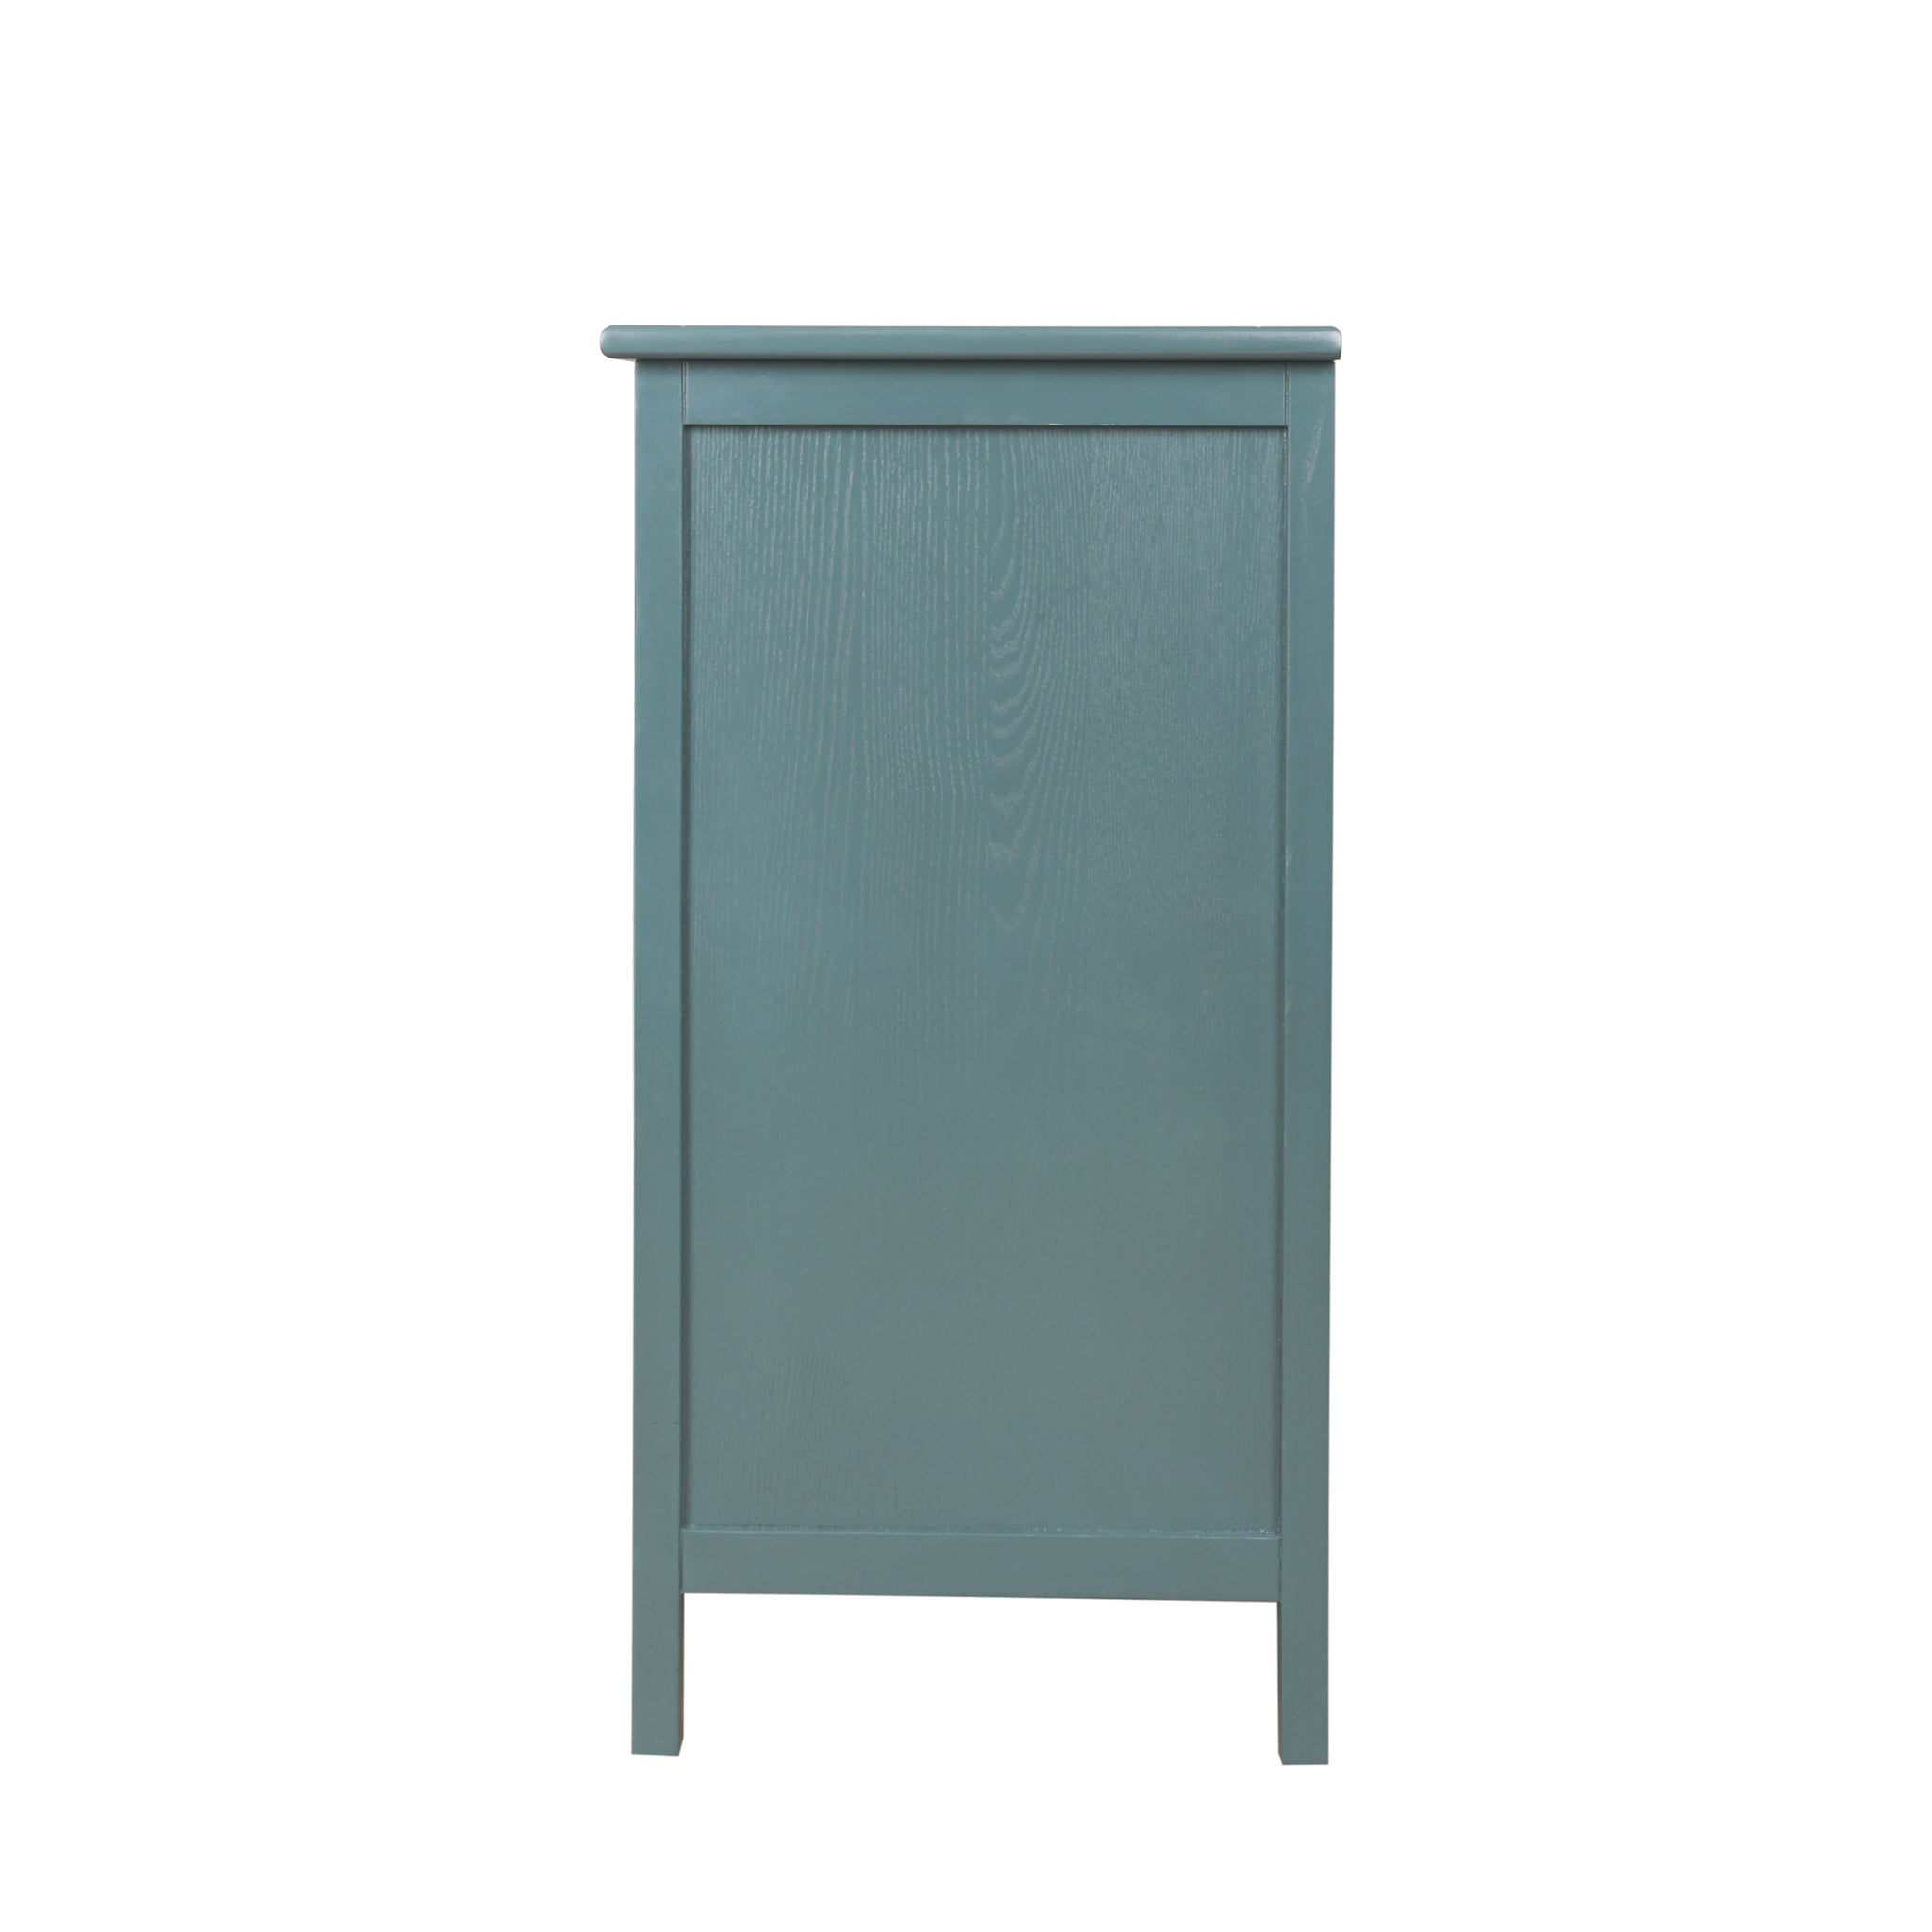 2 door cabinet with semicircular elements,natural dark green-mdf